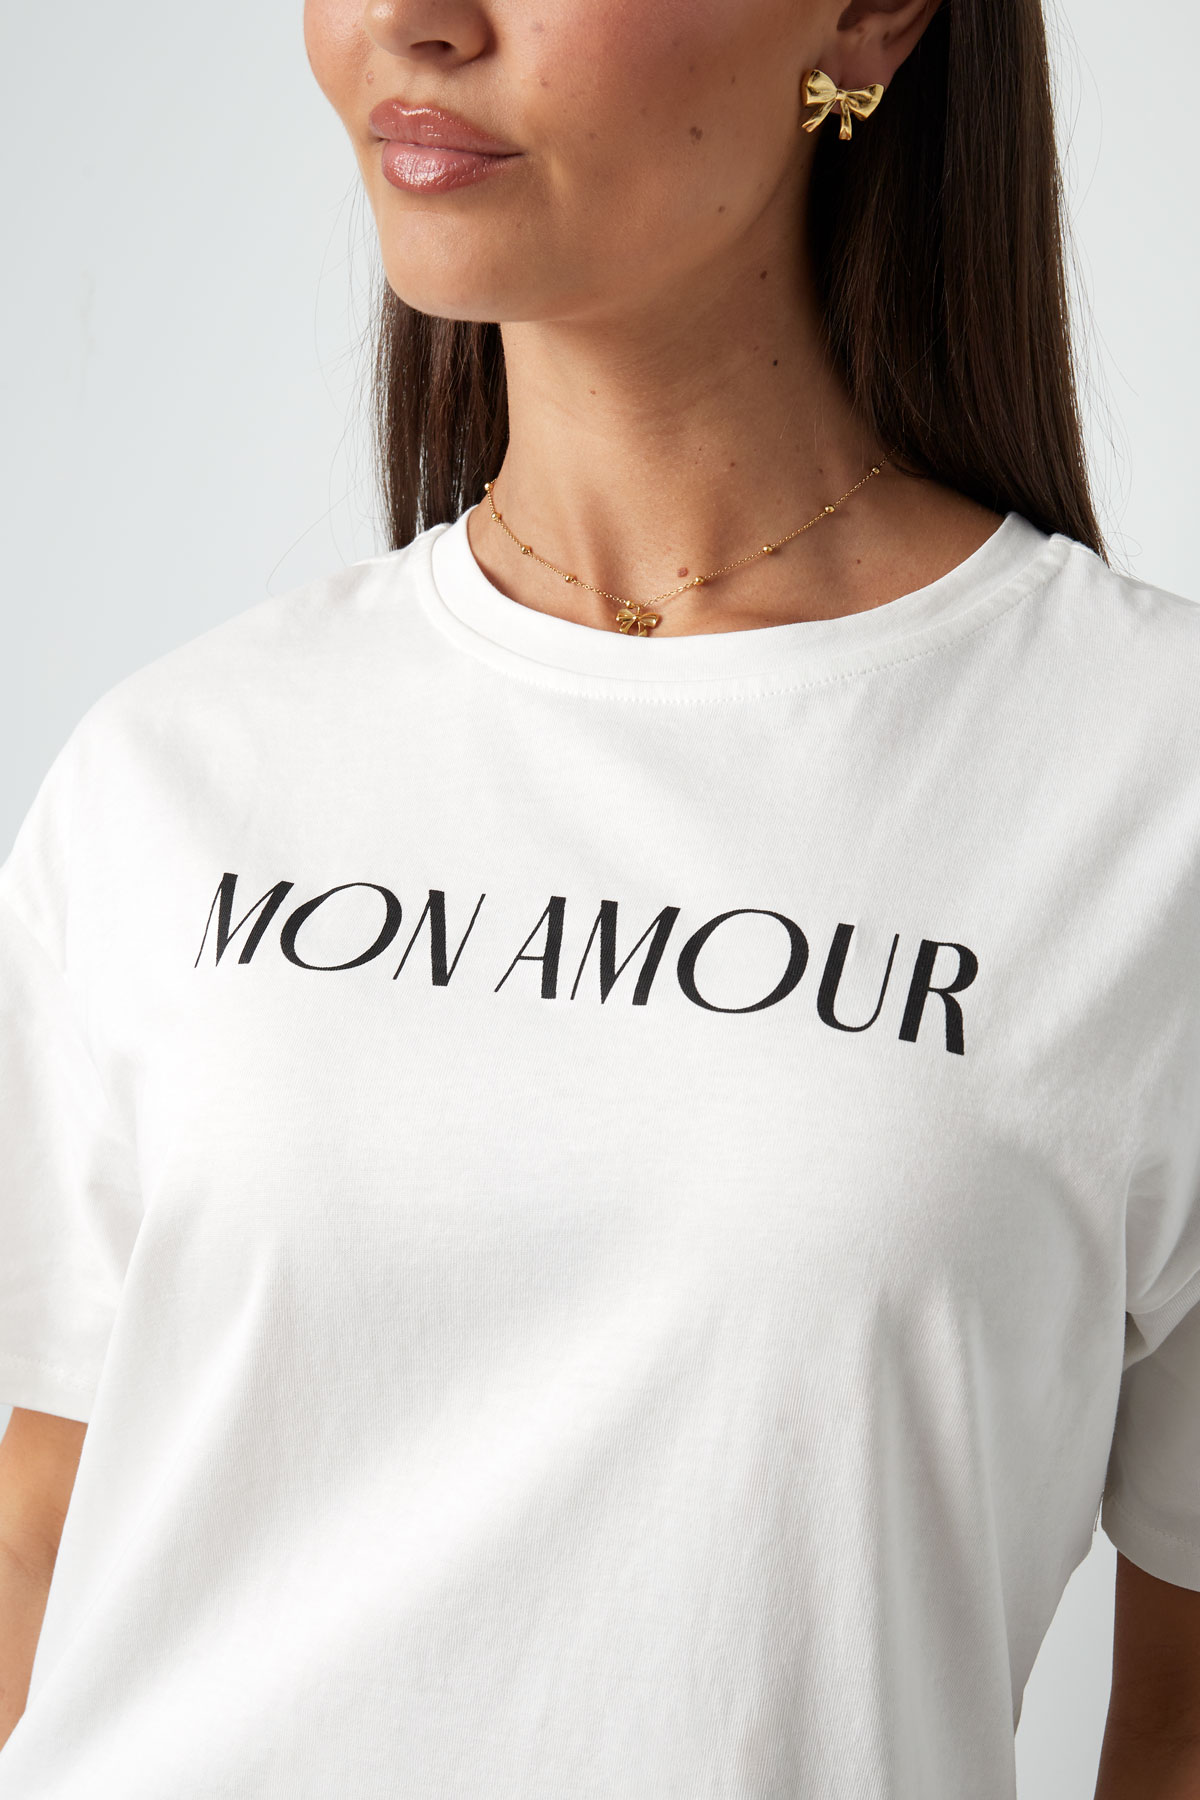 T-shirt mon amour - siyah beyaz h5 Resim5